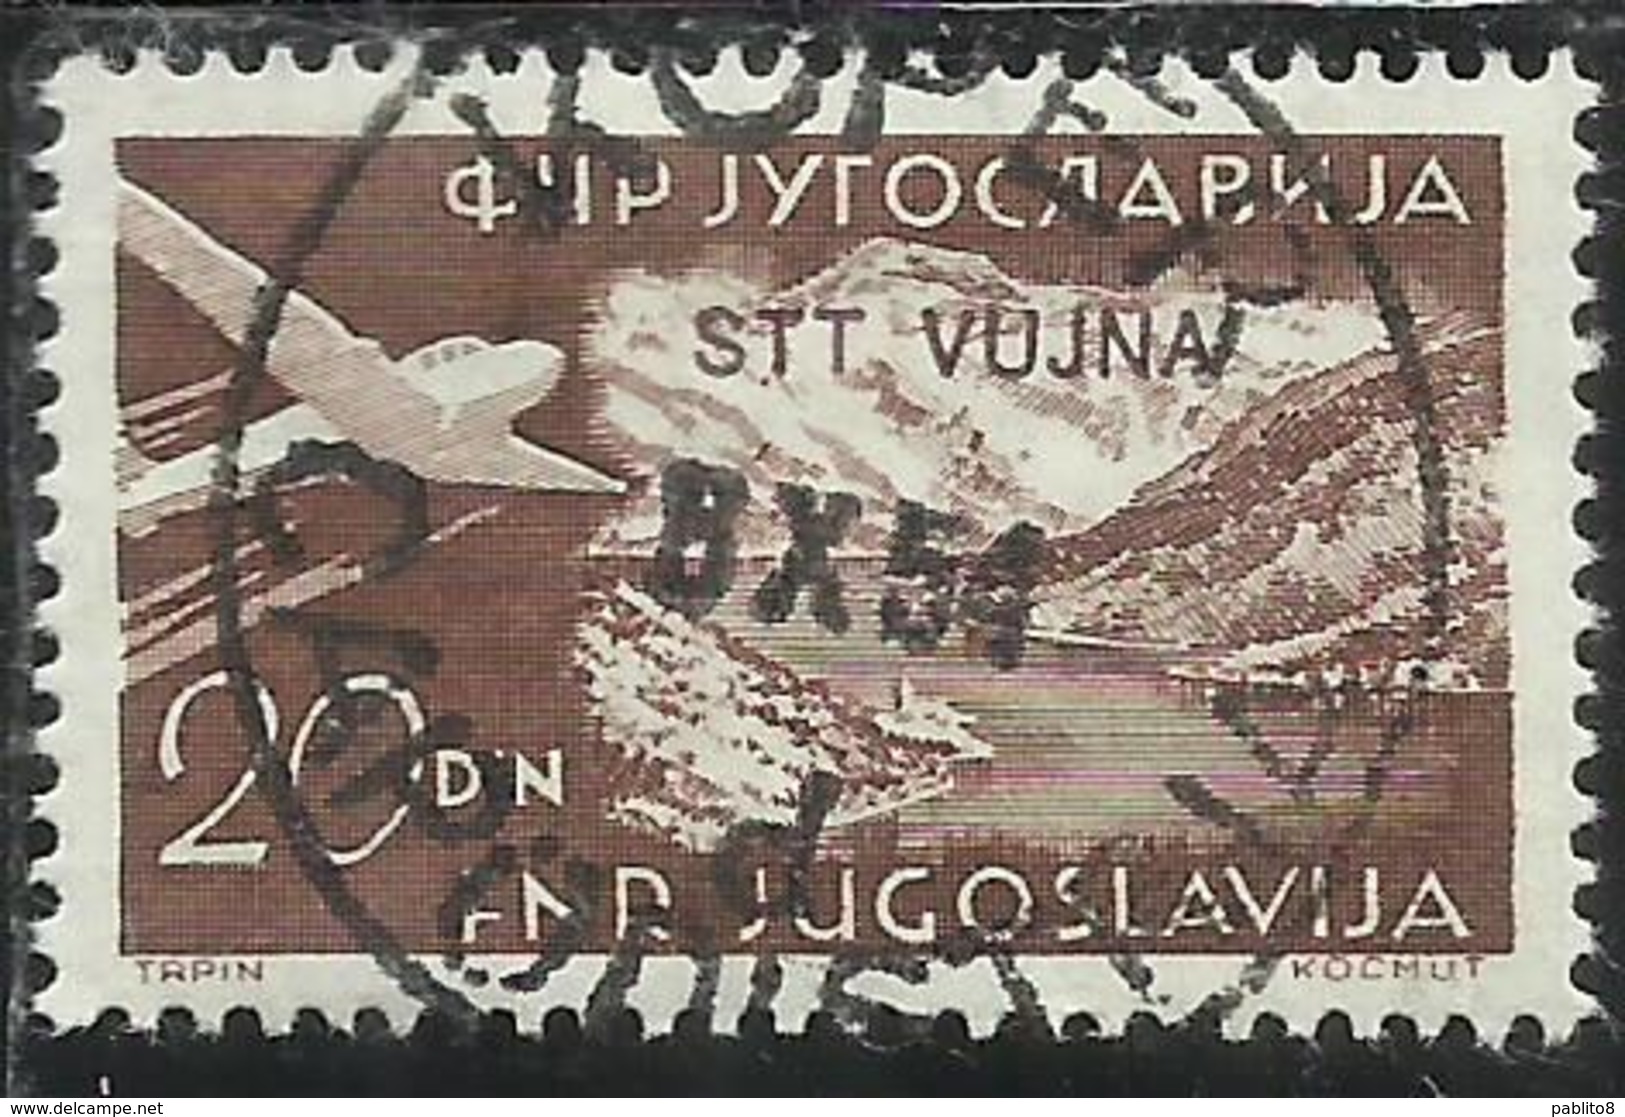 TRIESTE B 1954 POSTA AEREA AIR MAIL ESPERANTO CONGRESS YUGOSLAVIA SOPRASTAMPATO JUGOSLAVIA 20d USATO USED OBLITERE' - Luchtpost